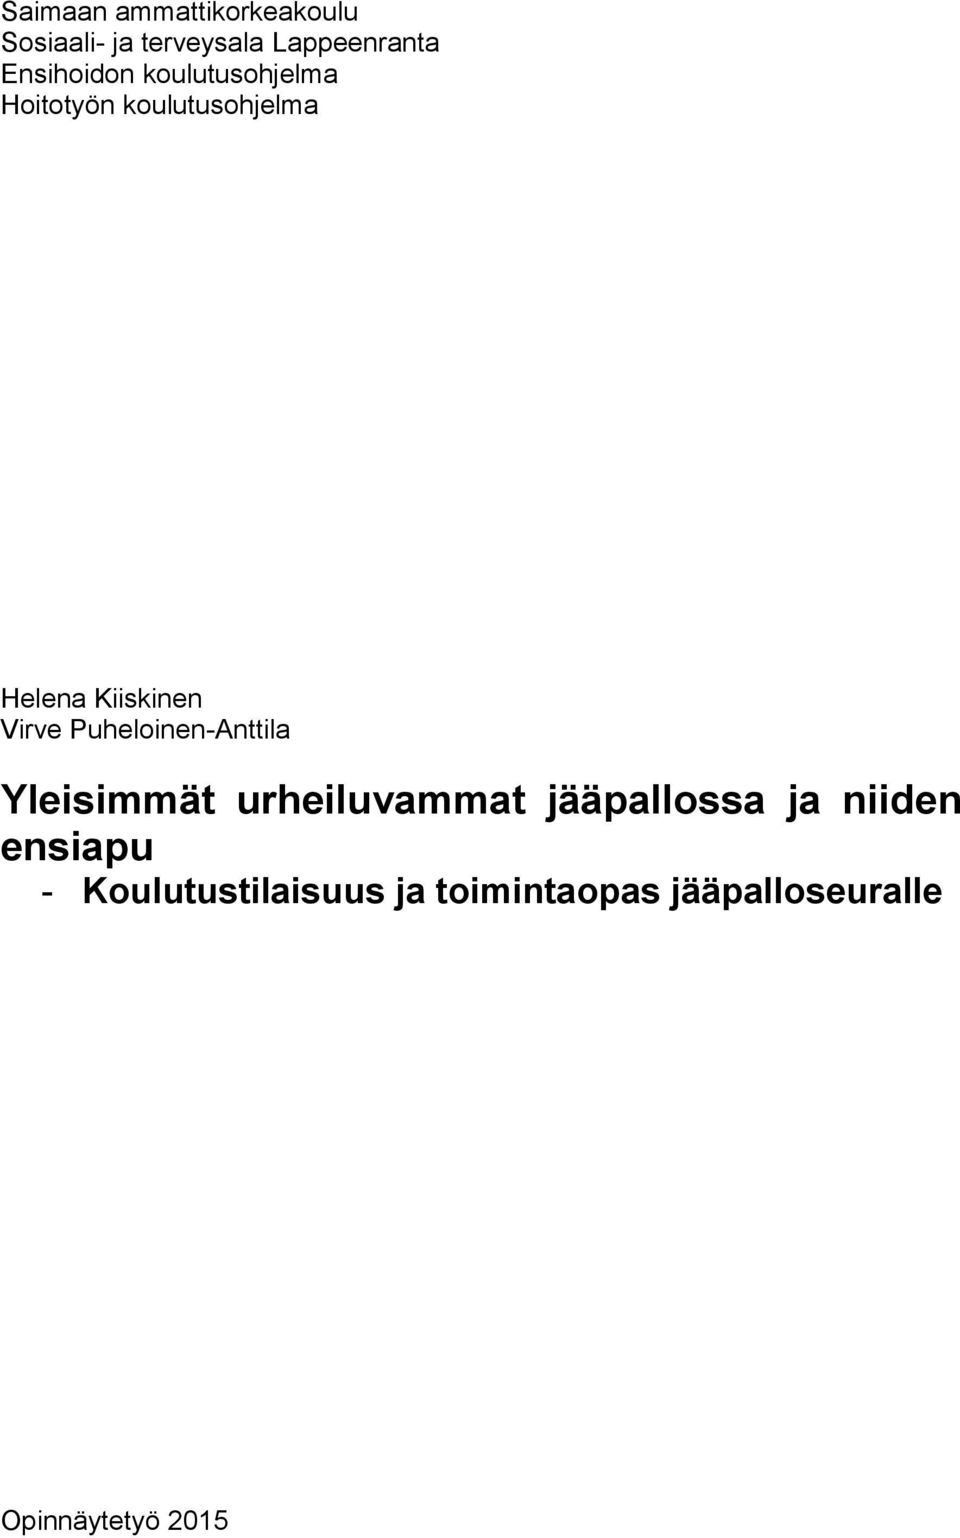 Virve Puheloinen-Anttila Yleisimmät urheiluvammat jääpallossa ja